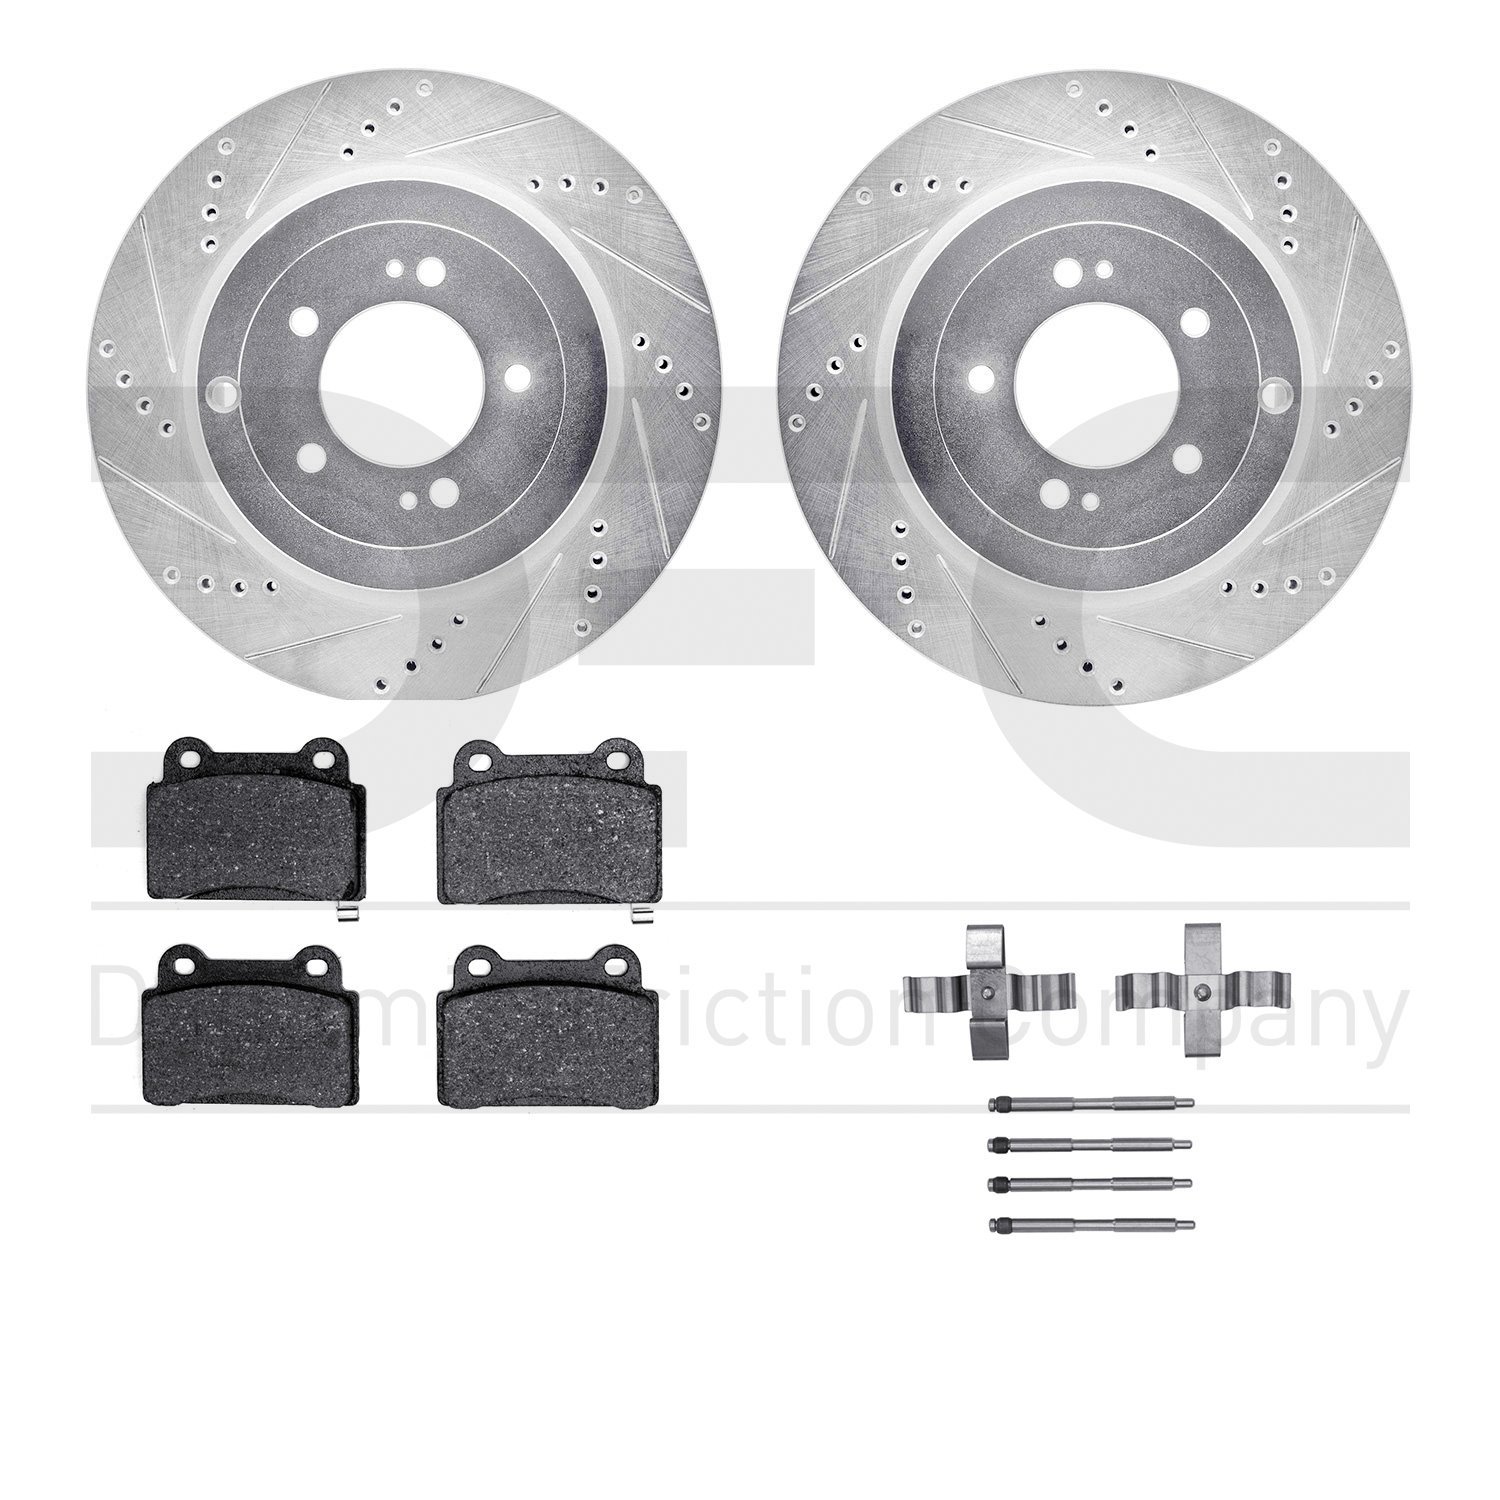 7612-72002 Drilled/Slotted Brake Rotors w/5000 Euro Ceramic Brake Pads Kit & Hardware [Silver], 2008-2015 Mitsubishi, Position: